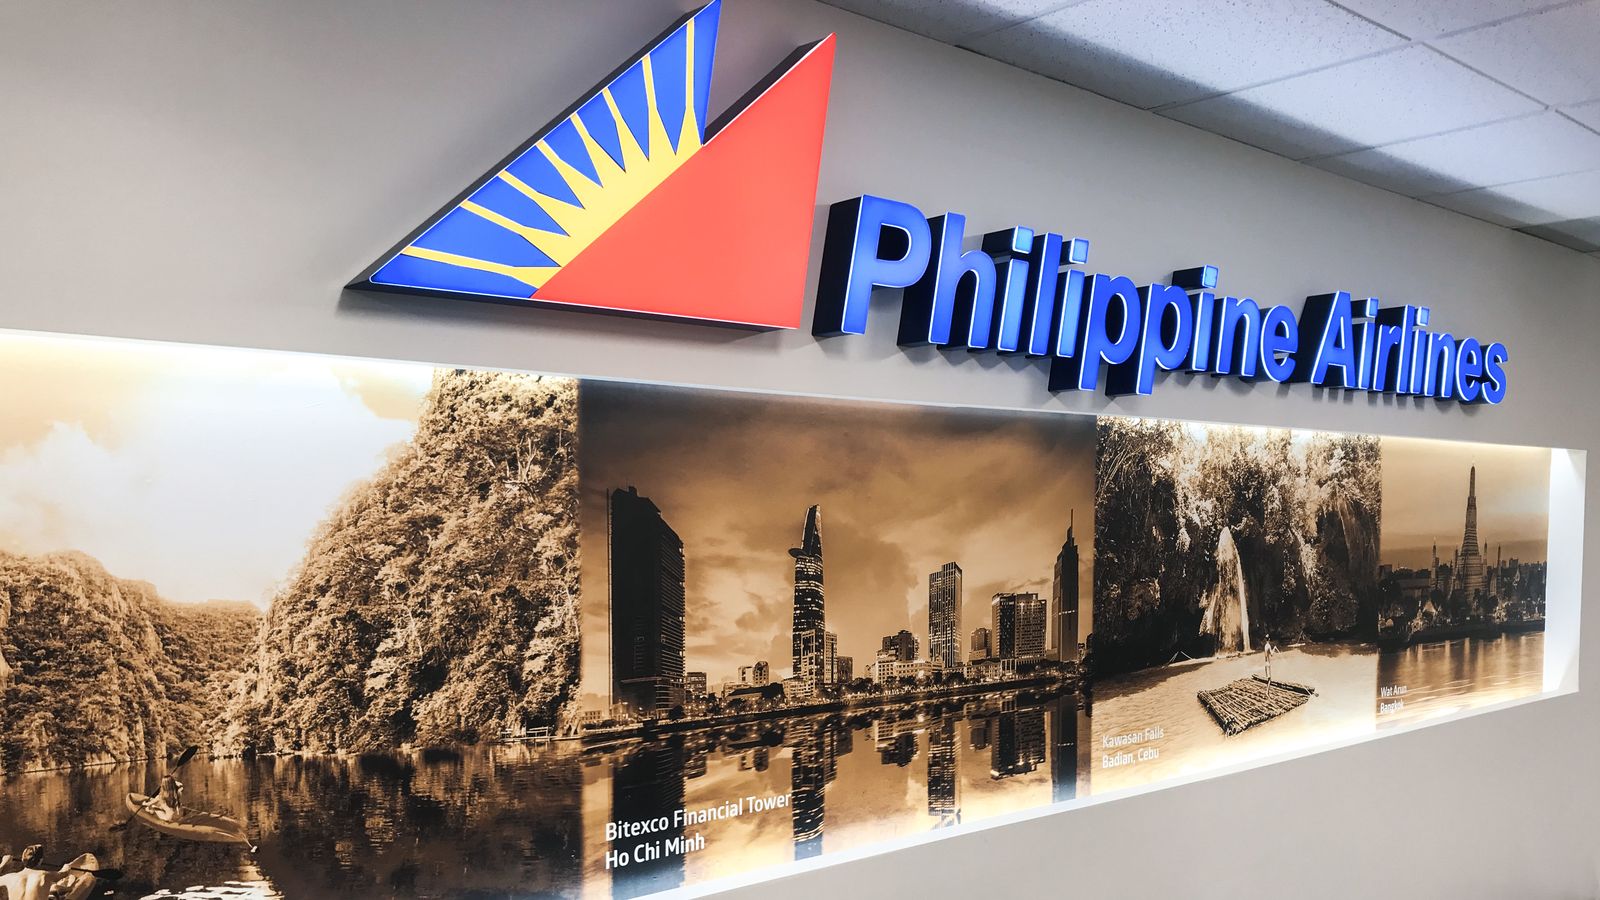 philippine airlines indoor illuminated letters